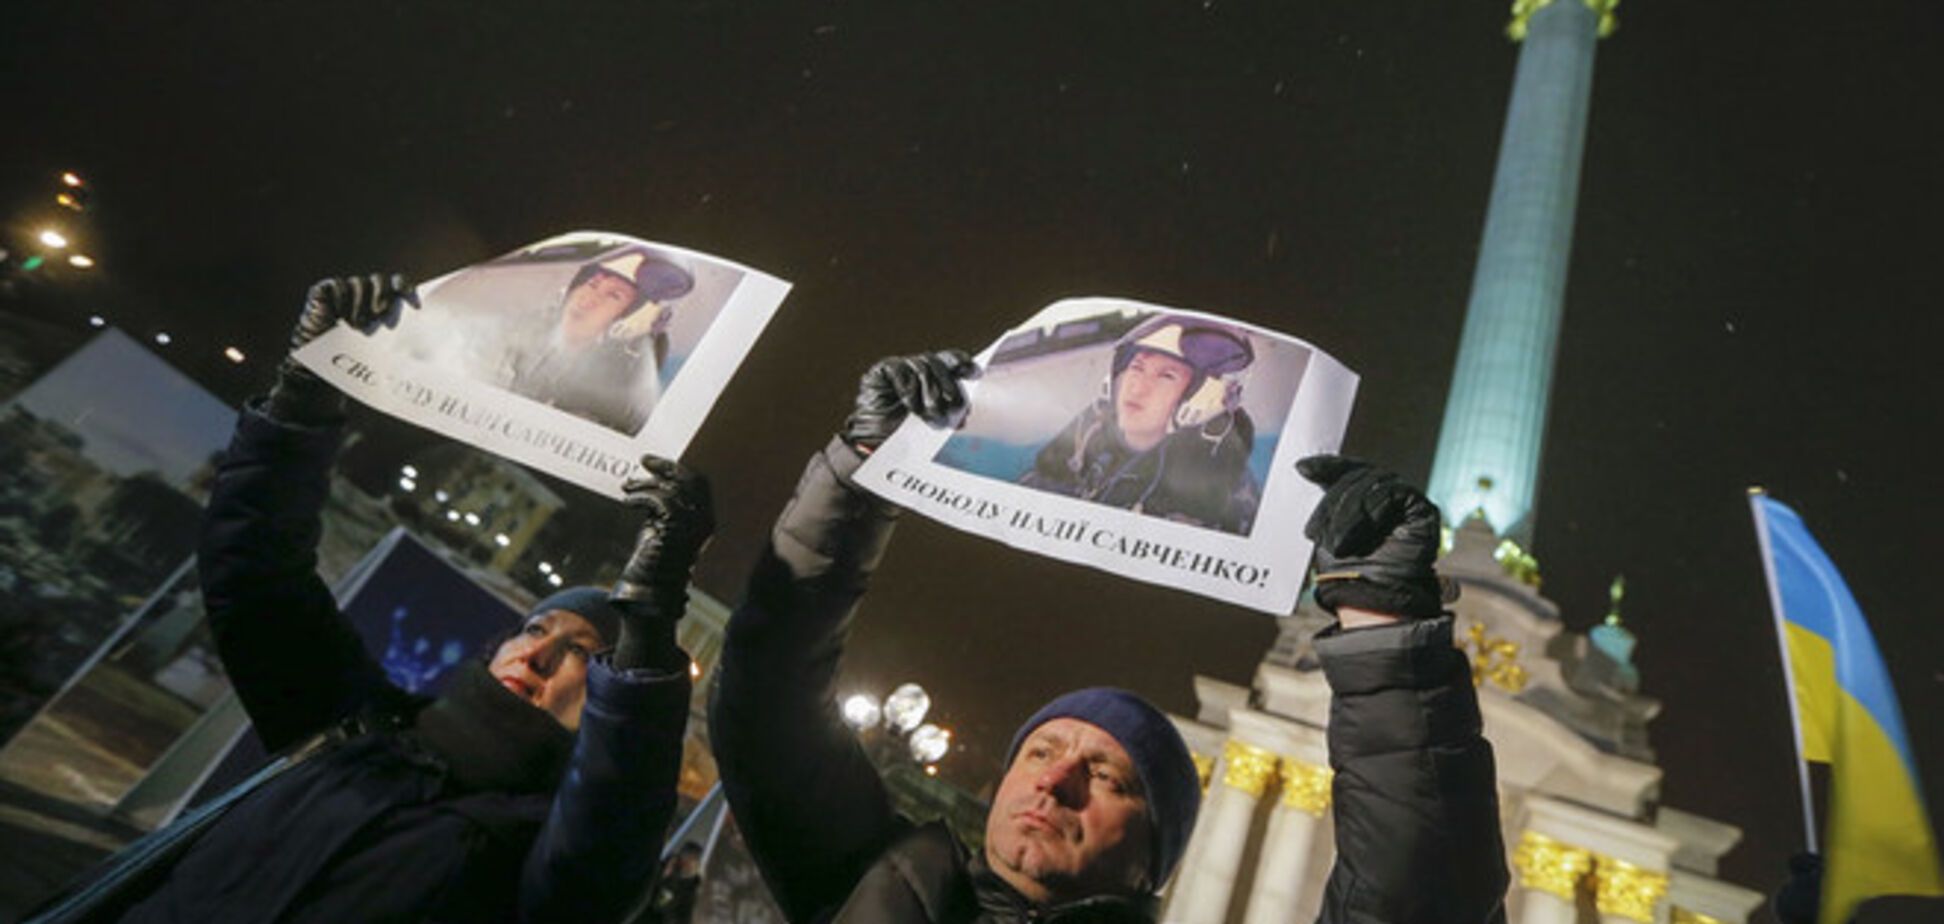 Жизнь Савченко висит на волоске - российский правозащитник